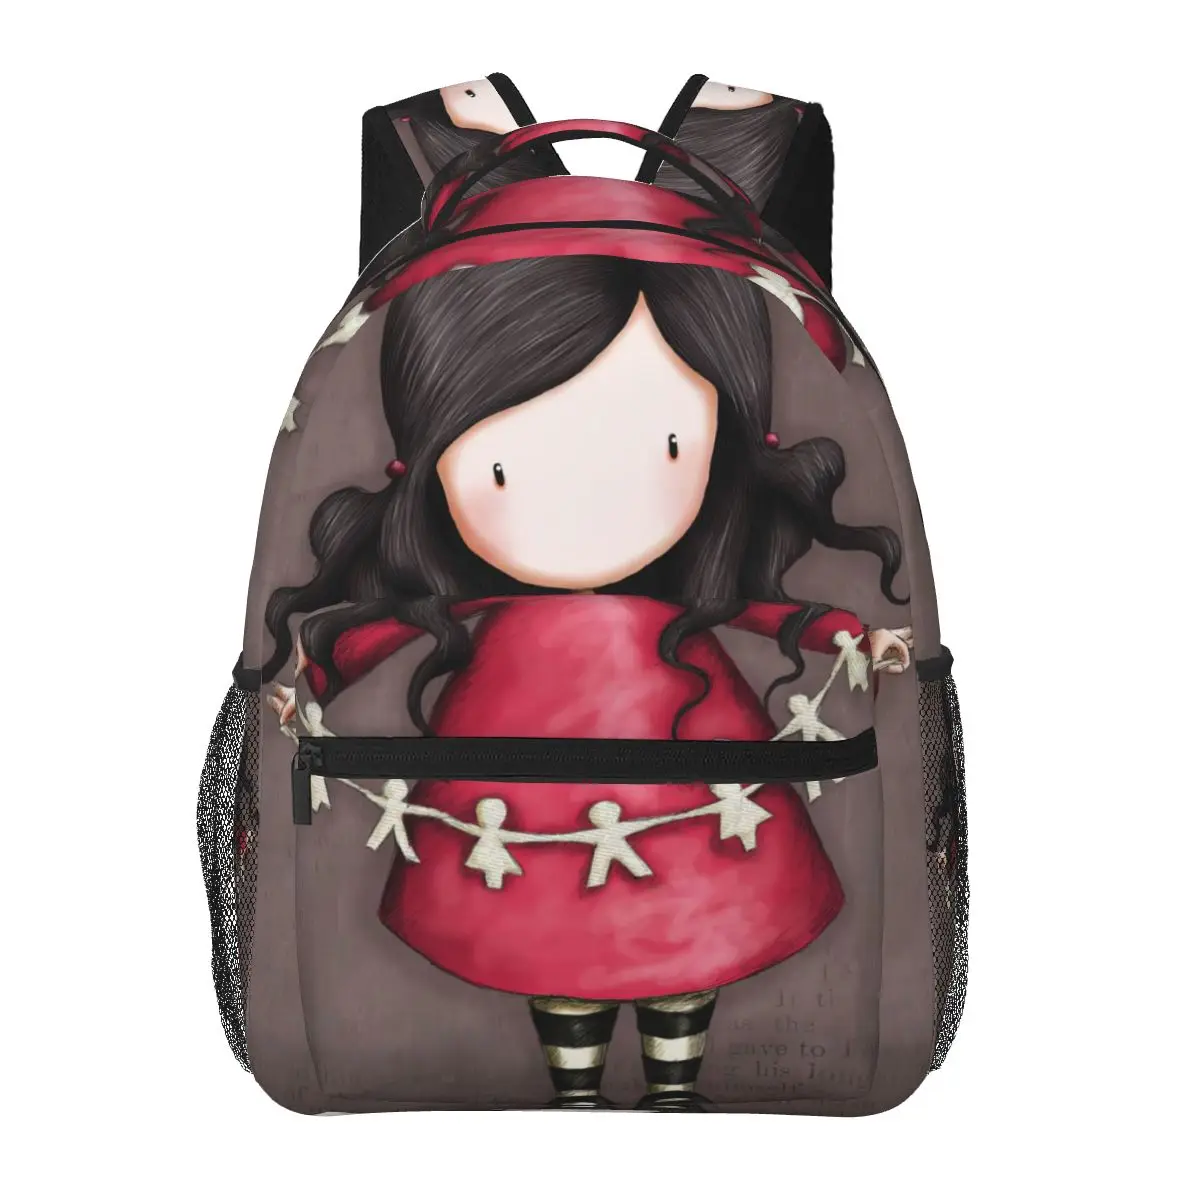 

Art Cartoon,Gorjuss Backpack for Girls Boys Travel RucksackBackpacks for Teenage school bag